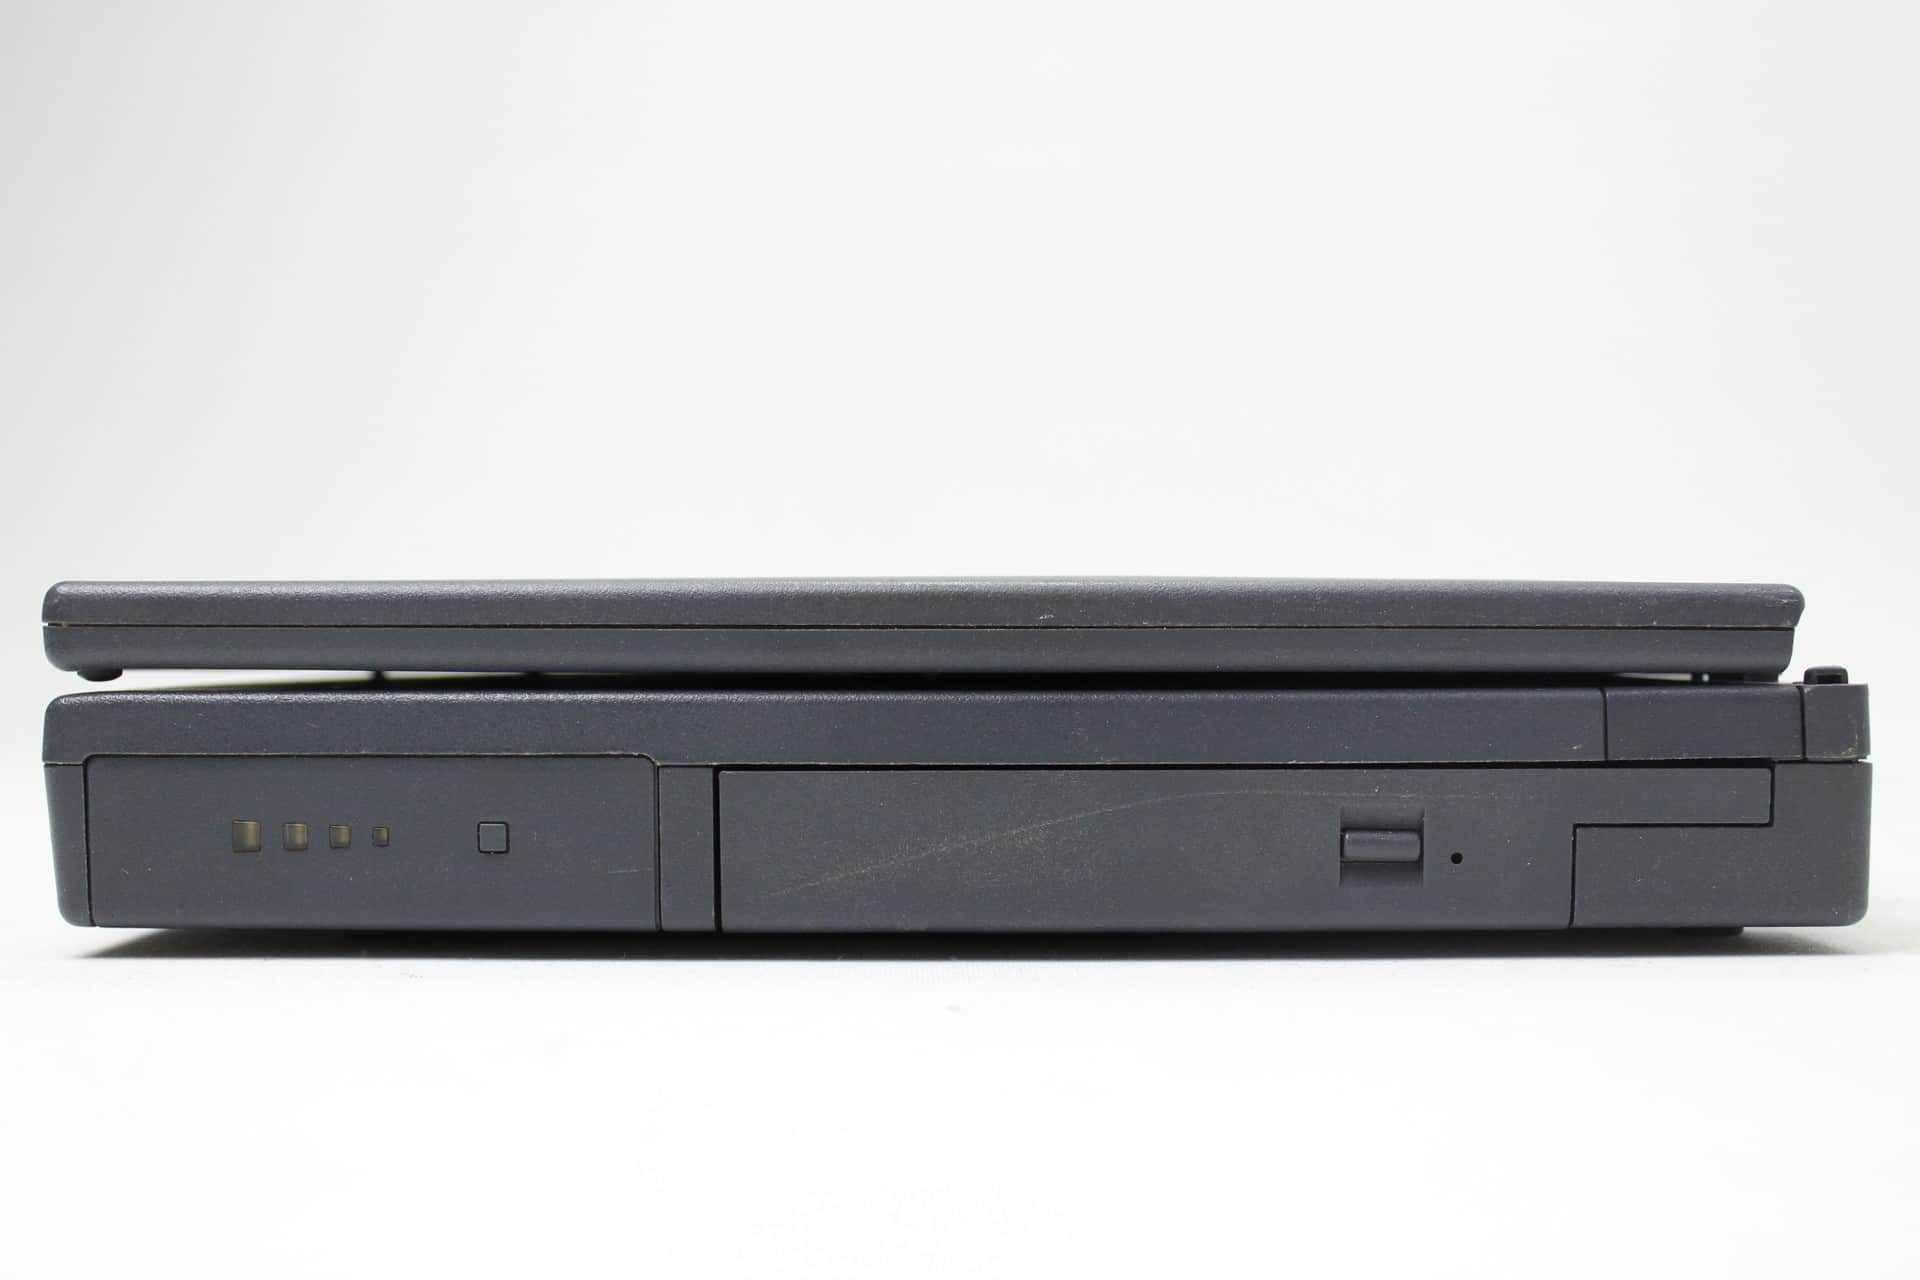 Hewlett Packard OmniBook 2100 - Pravá strana zavřený